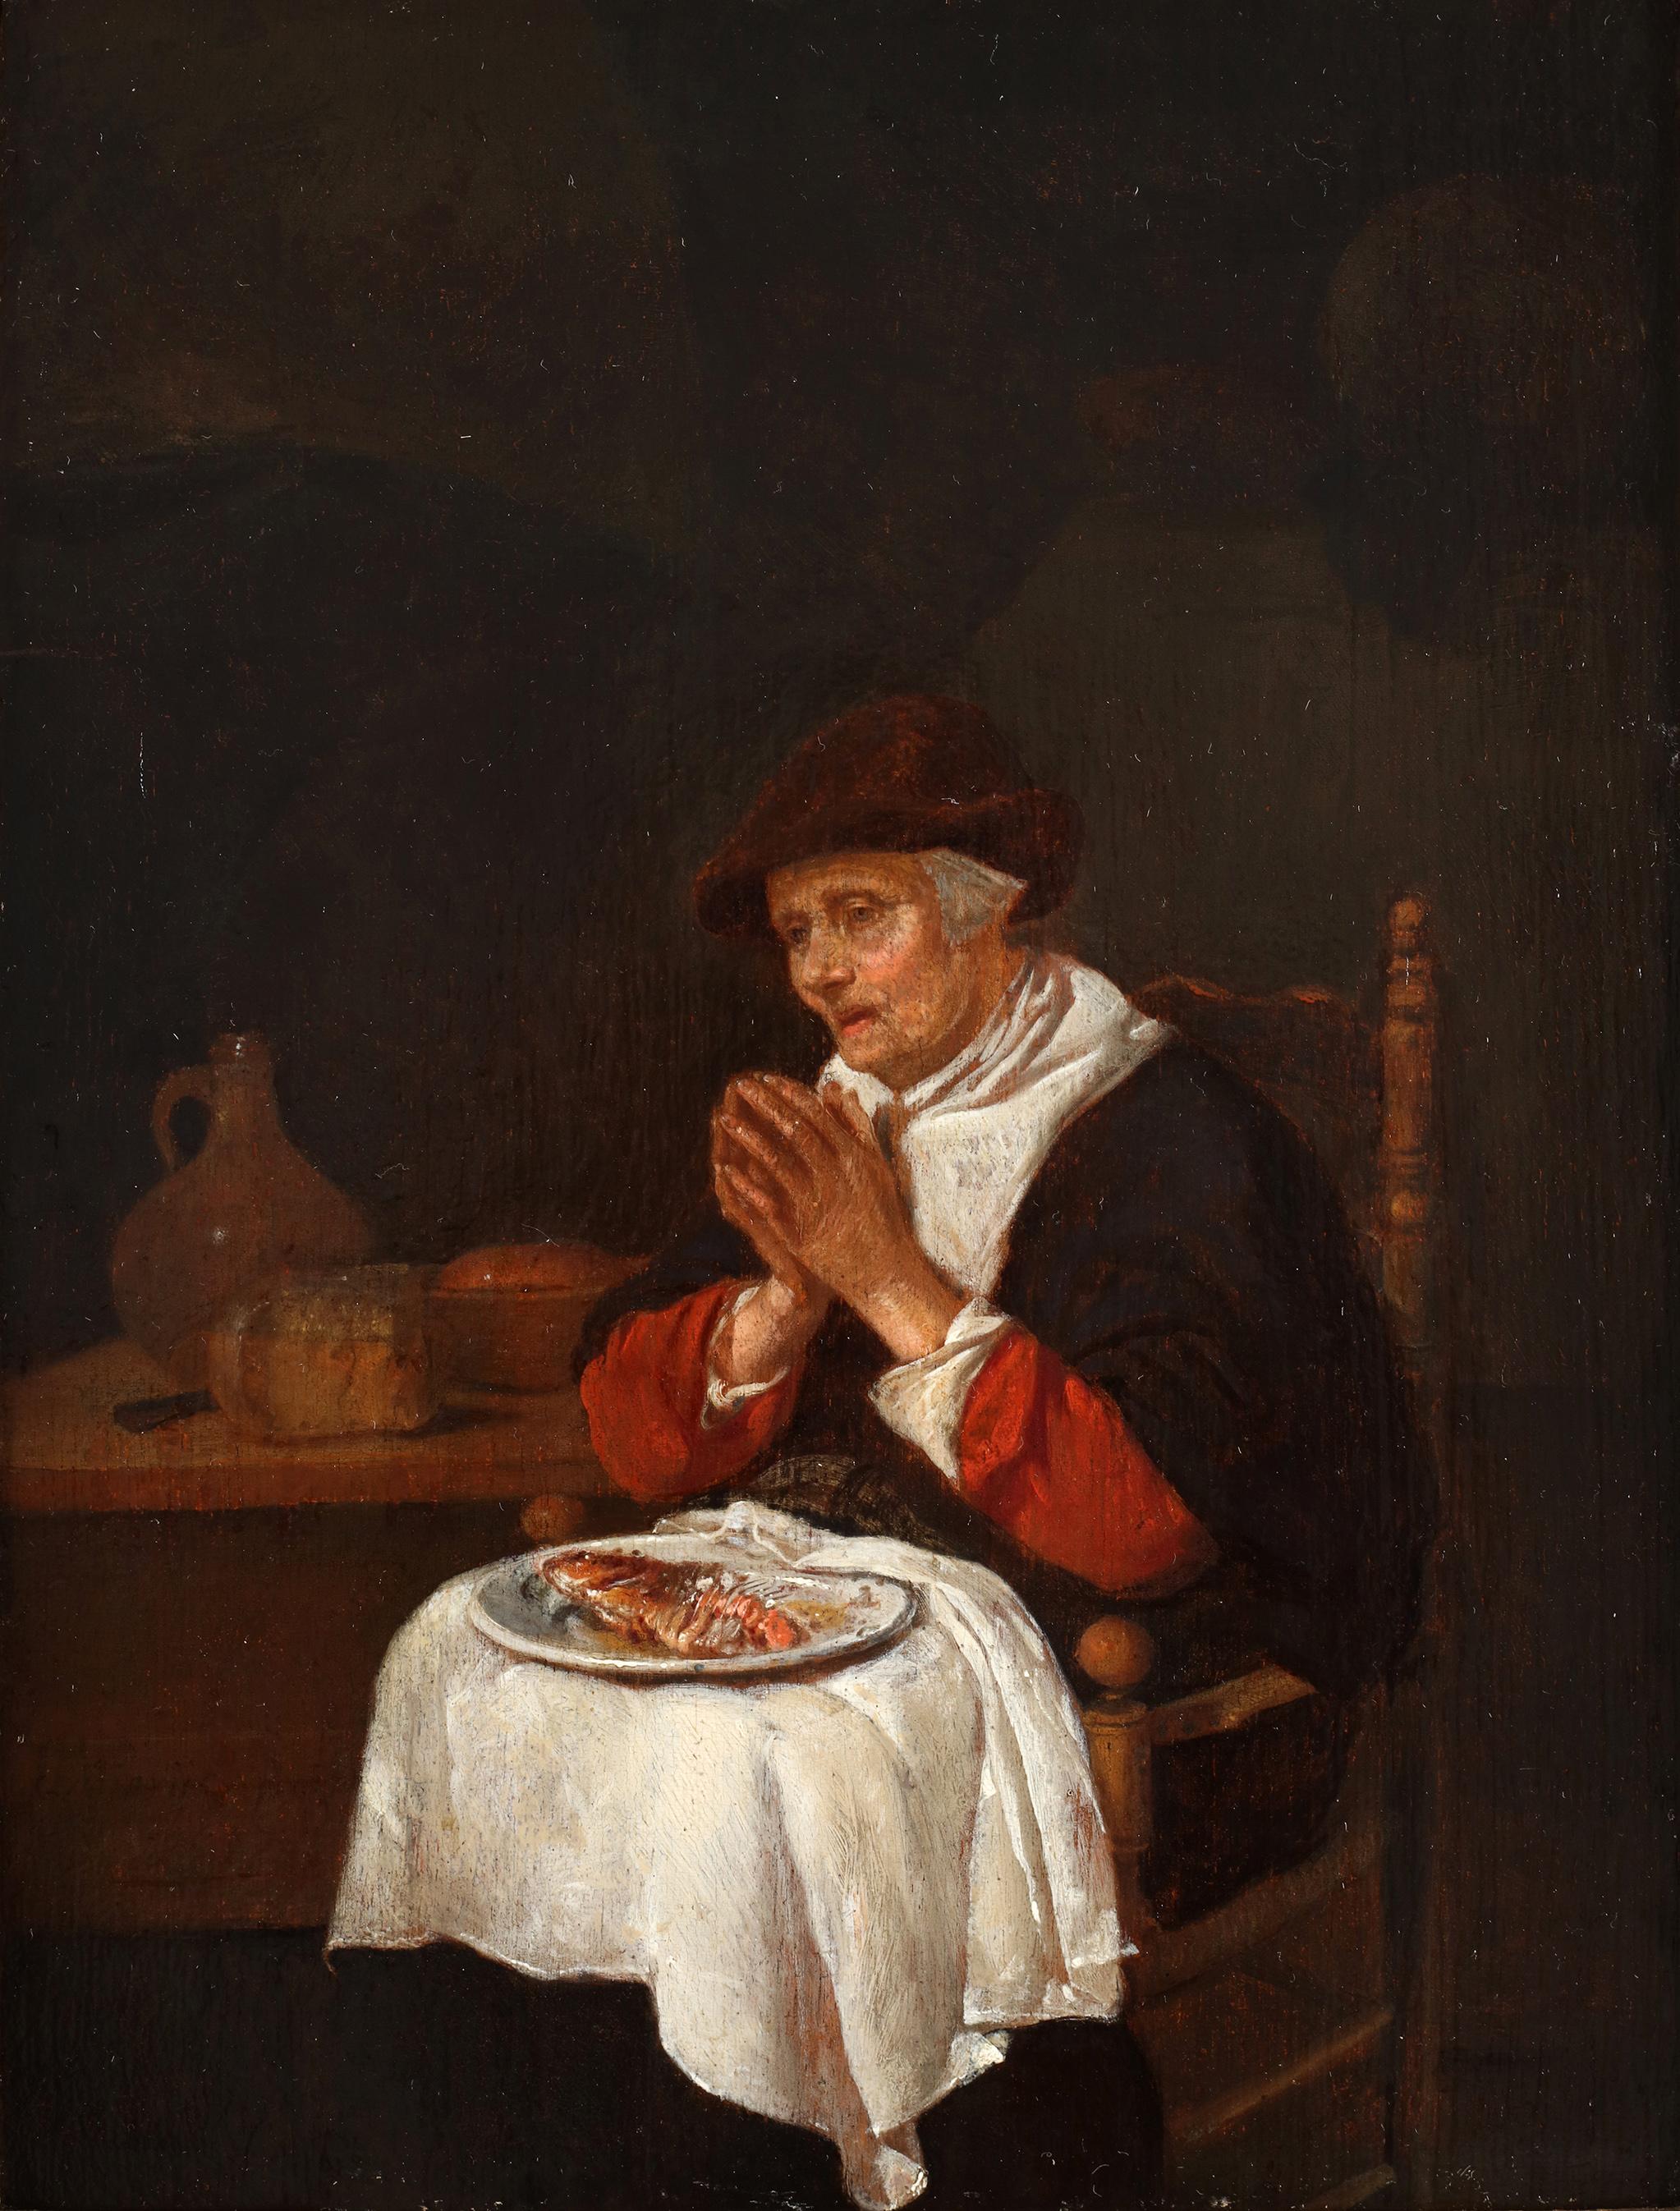 Öl auf Platte
Signiert und datiert unten links. 

Quiringh van Brekelenkam war ein niederländischer Genremaler, der bei Gerard Dou studierte. Daher ähneln seine Gemälde aus den 1640er und 50er Jahren denen der Leidener Fijnschilders. 

Dieses